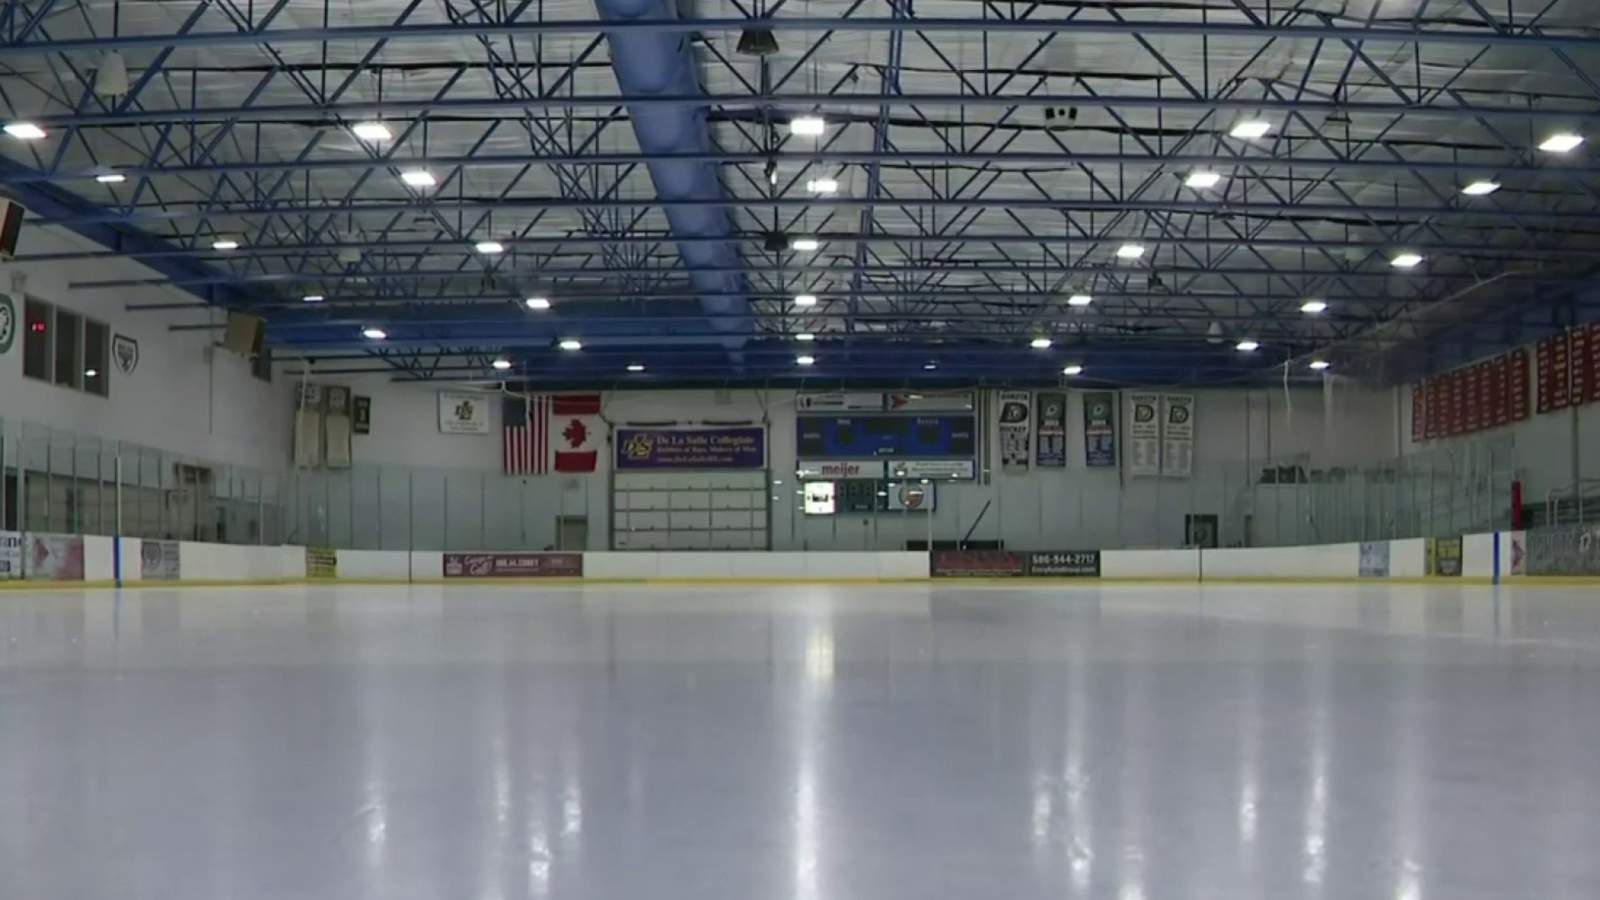 Michigan ice arenas push to reopen amid coronavirus pandemic